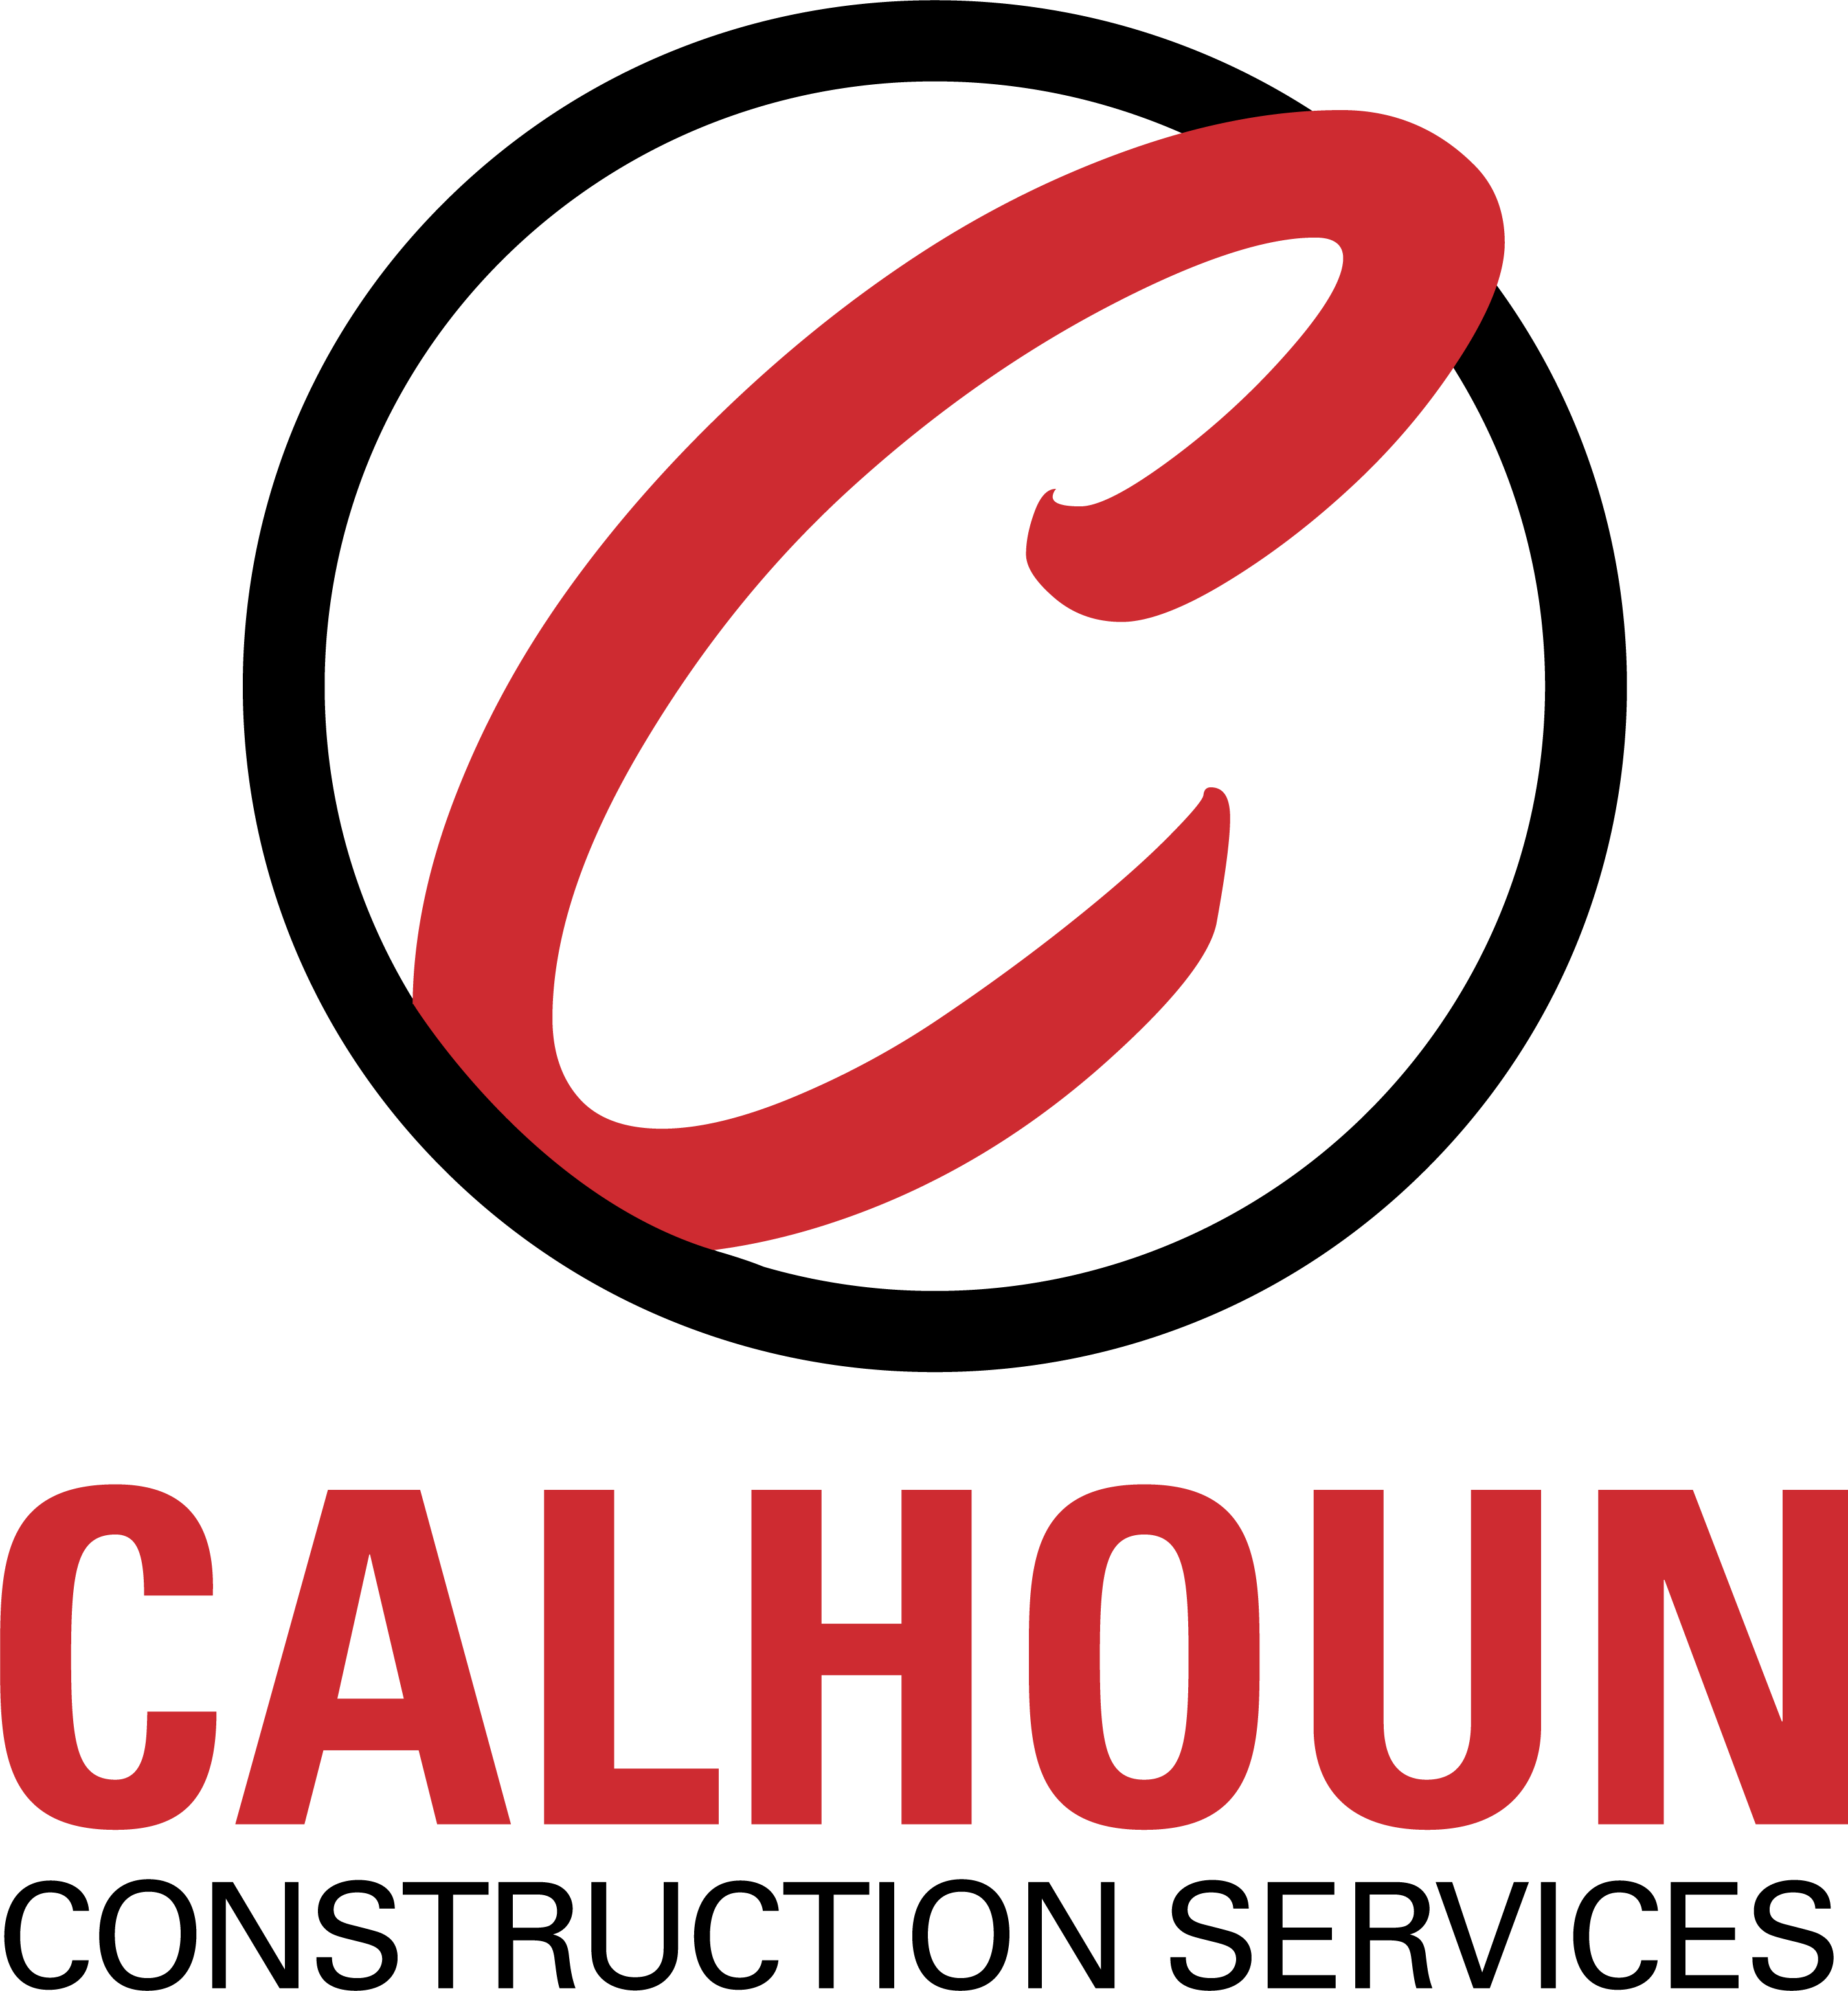 Construction Services Logo - Calhoun Construction. Calhoun Construction Services